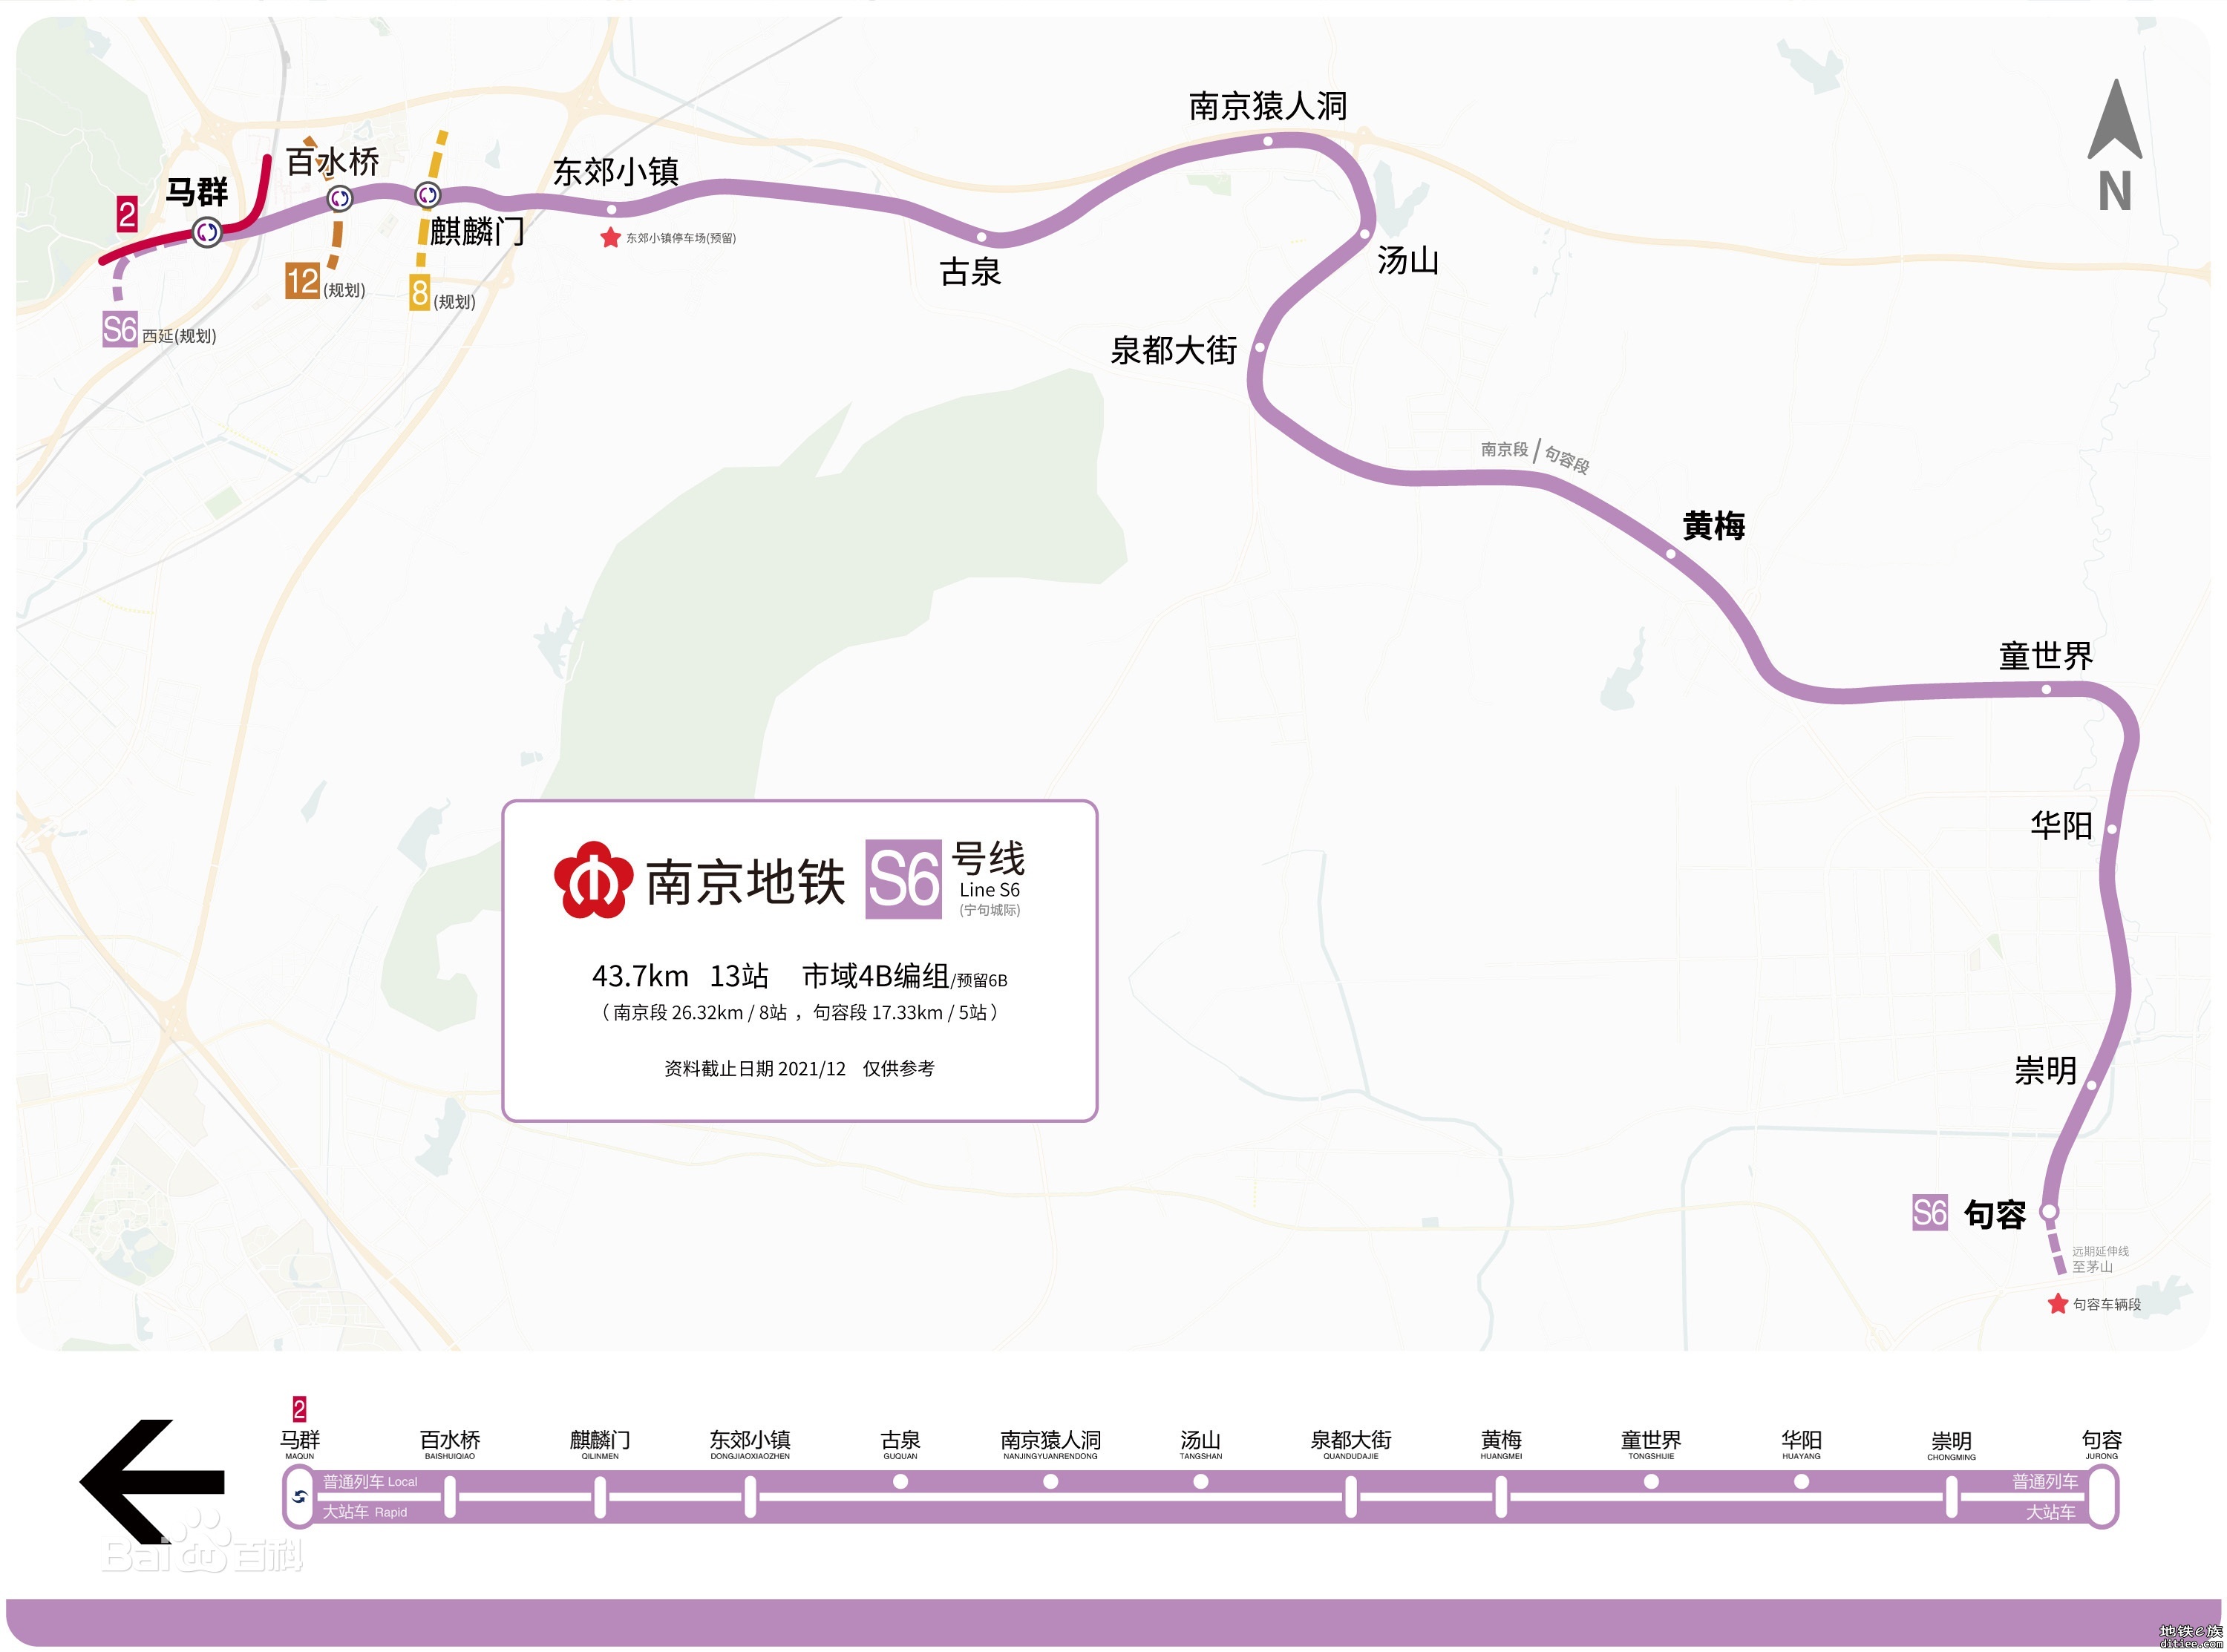 南京地铁宁句线云信号系统通过专家评审